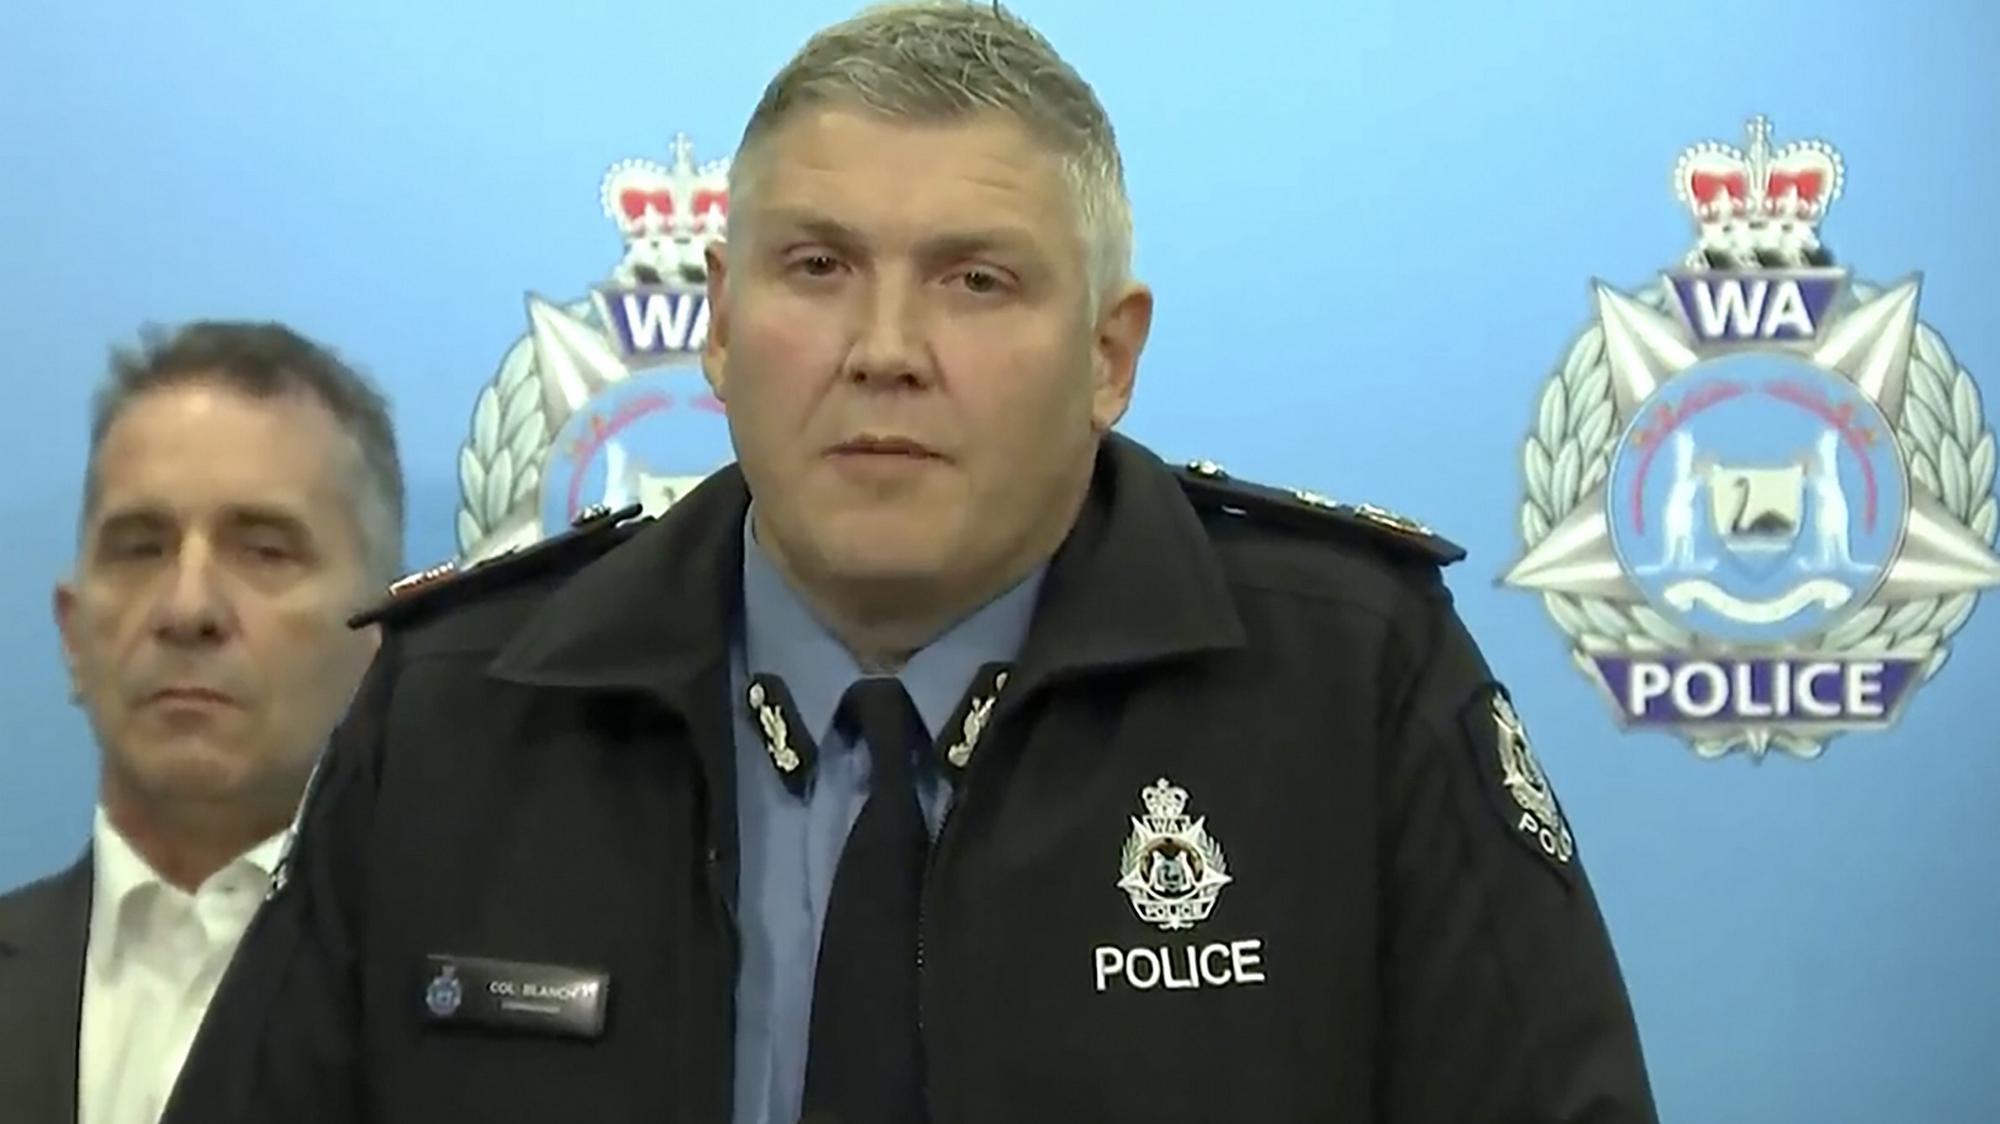 Západoaustrálsky policajný komisár Col Blanch na tlačovej konferencii informuje o incidente